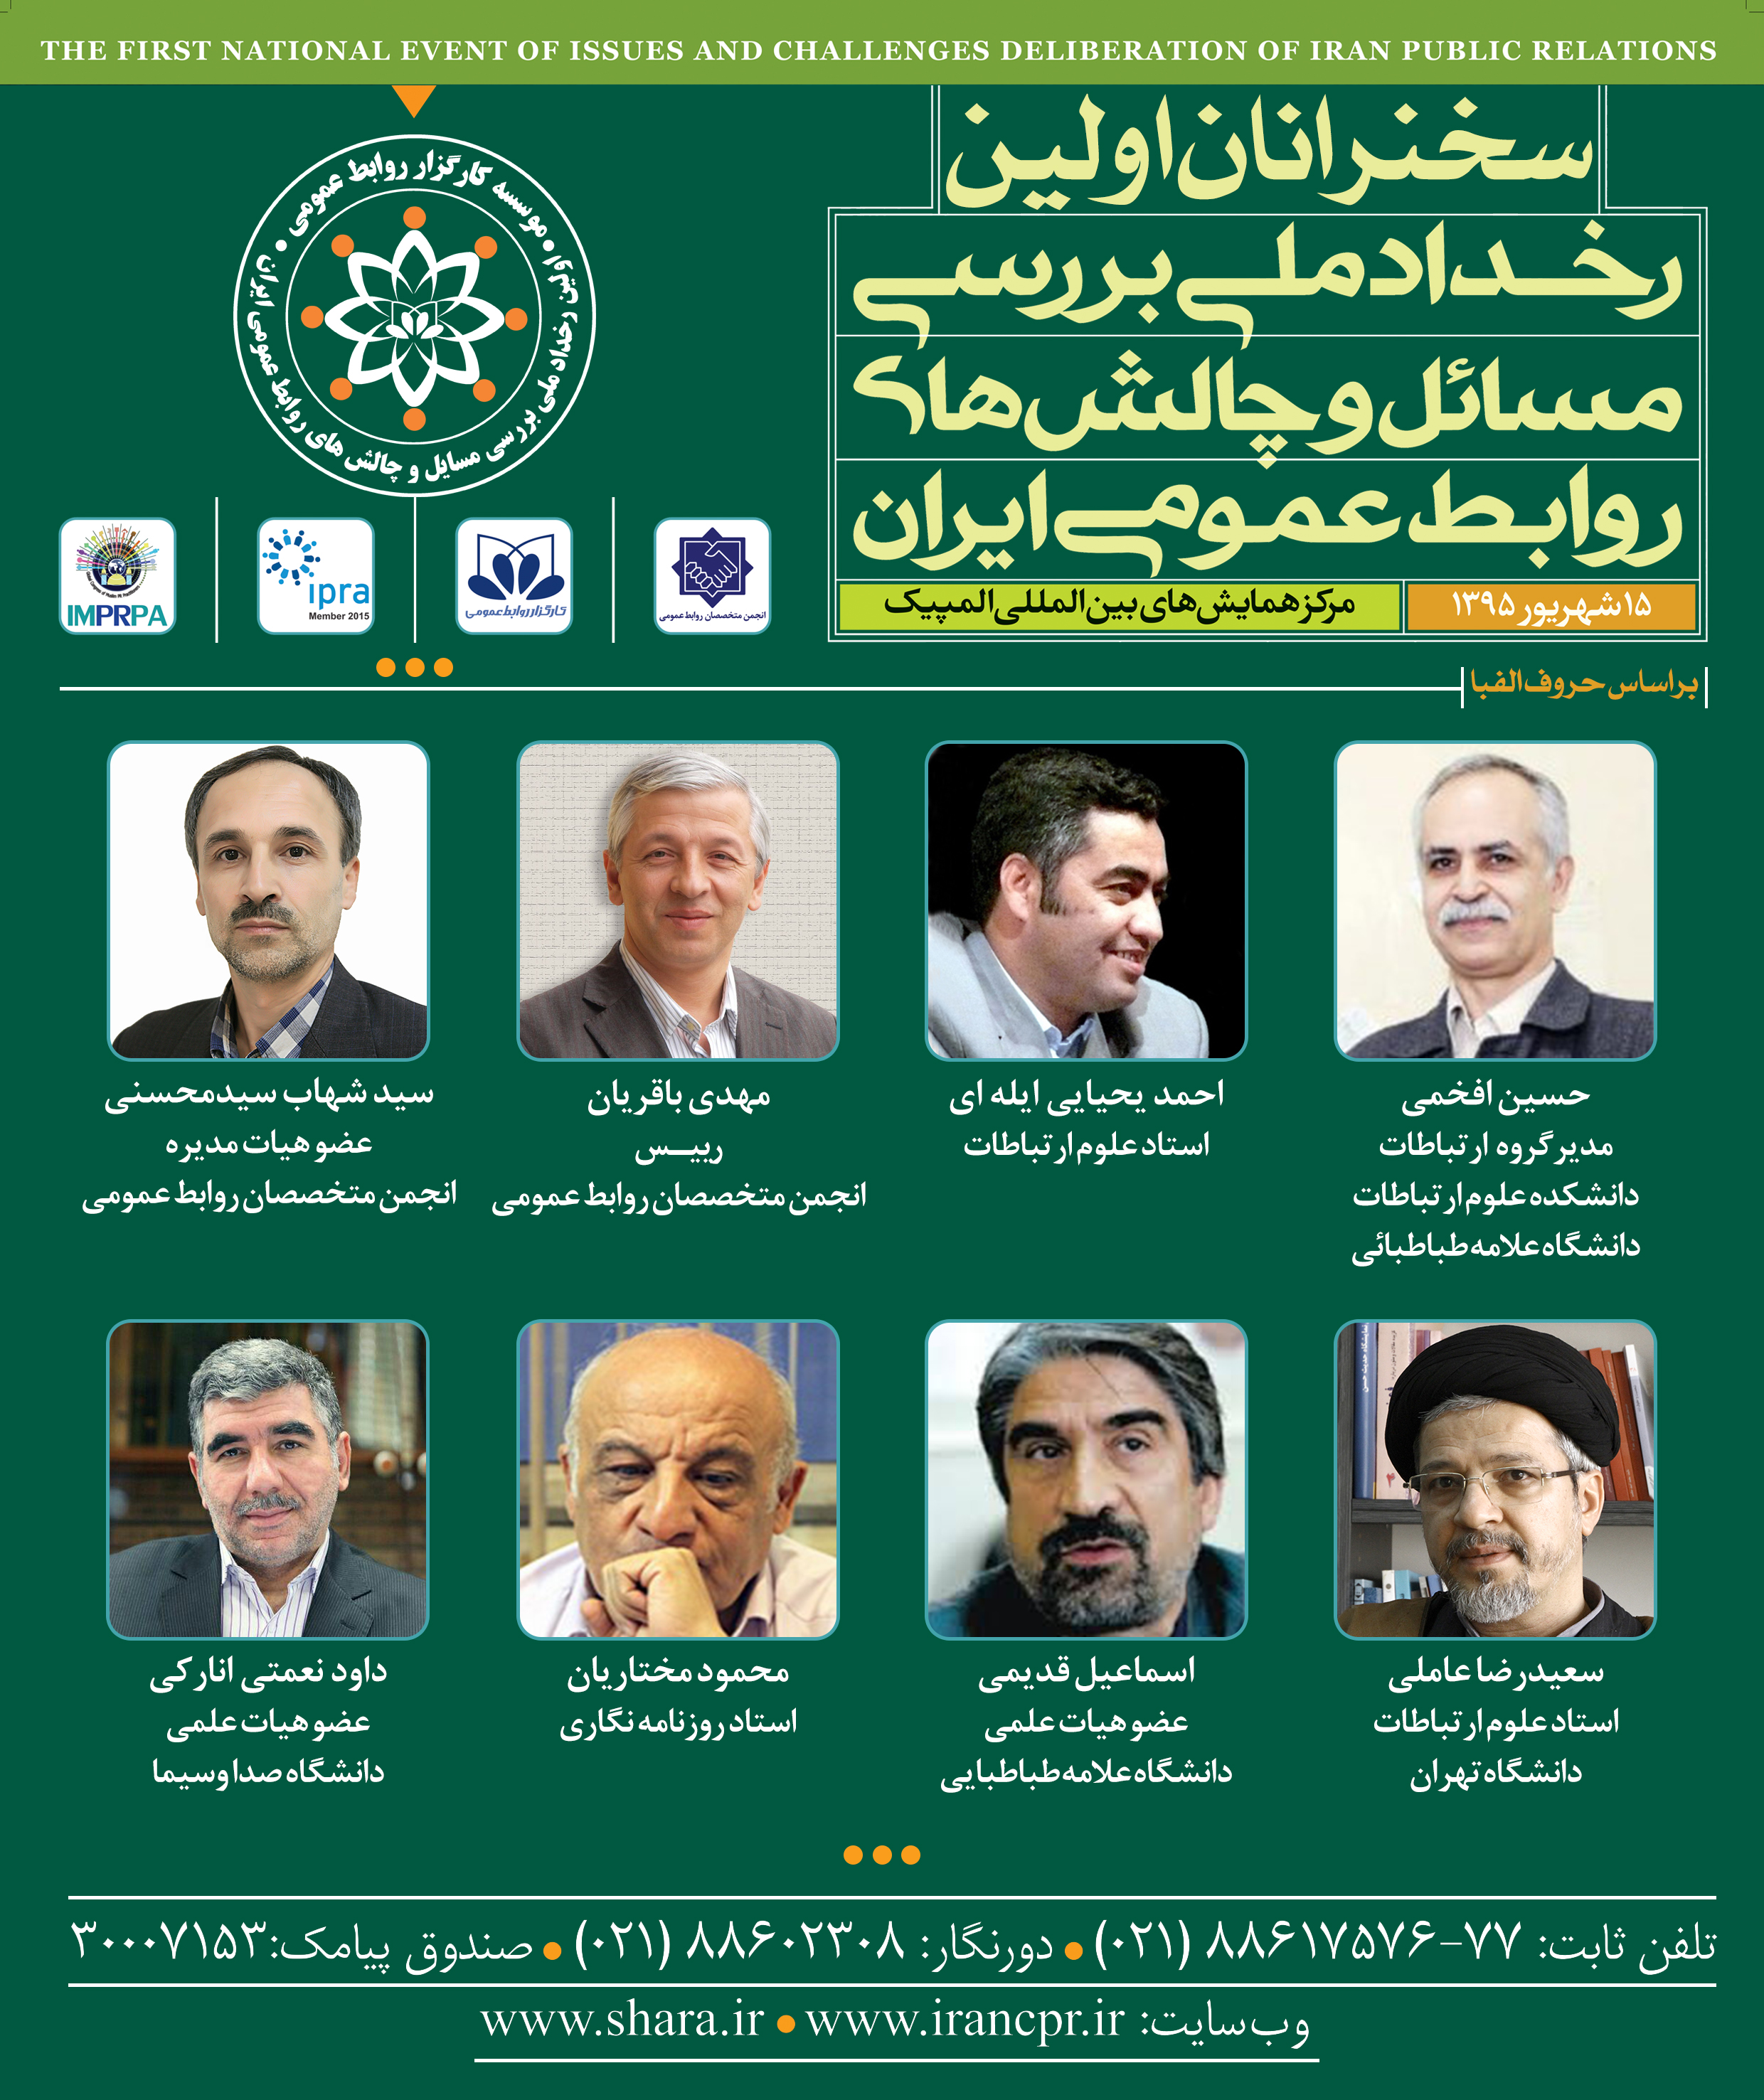 سخنرانان اولین رخداد ملی بررسی مسائل و چالش های روابط عمومی ایران